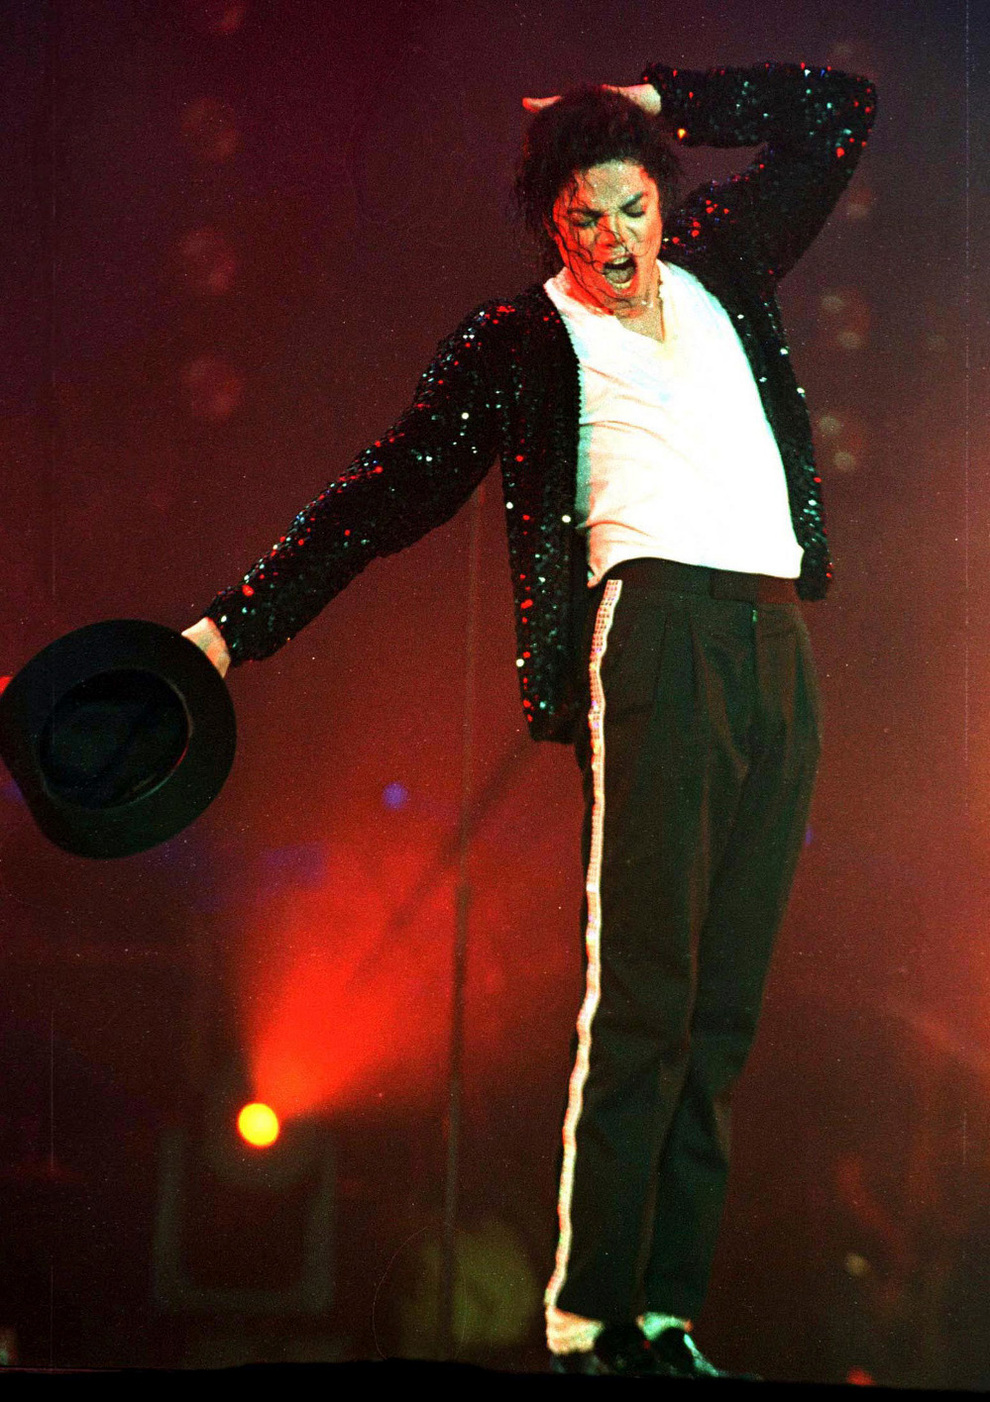 Resultado de imagen para Michael Jackson genera mÃ¡s ingresos en la actualidad que en vida